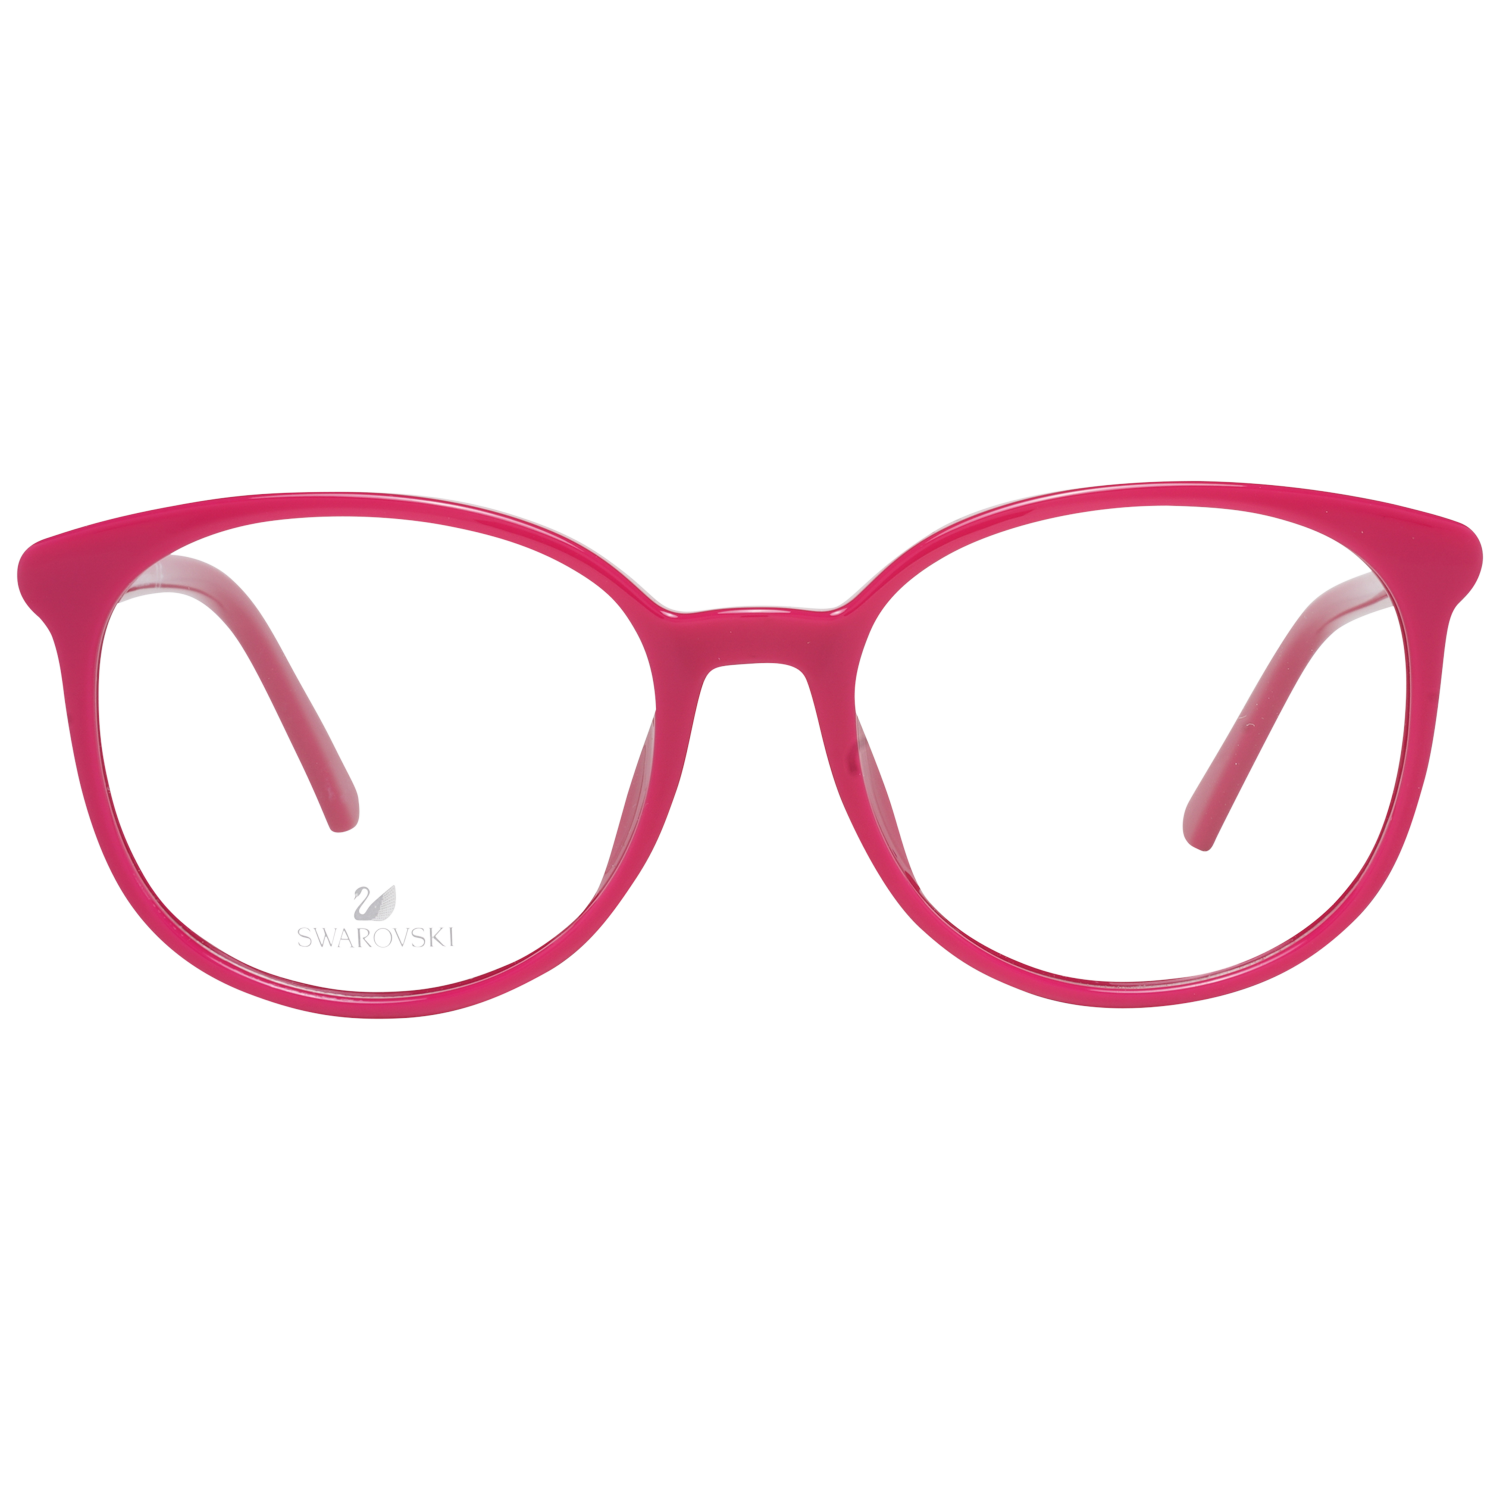 Swarovski Frames Swarovski Women Glasses Optical Frame SK5310 075 52 Eyeglasses Eyewear UK USA Australia 